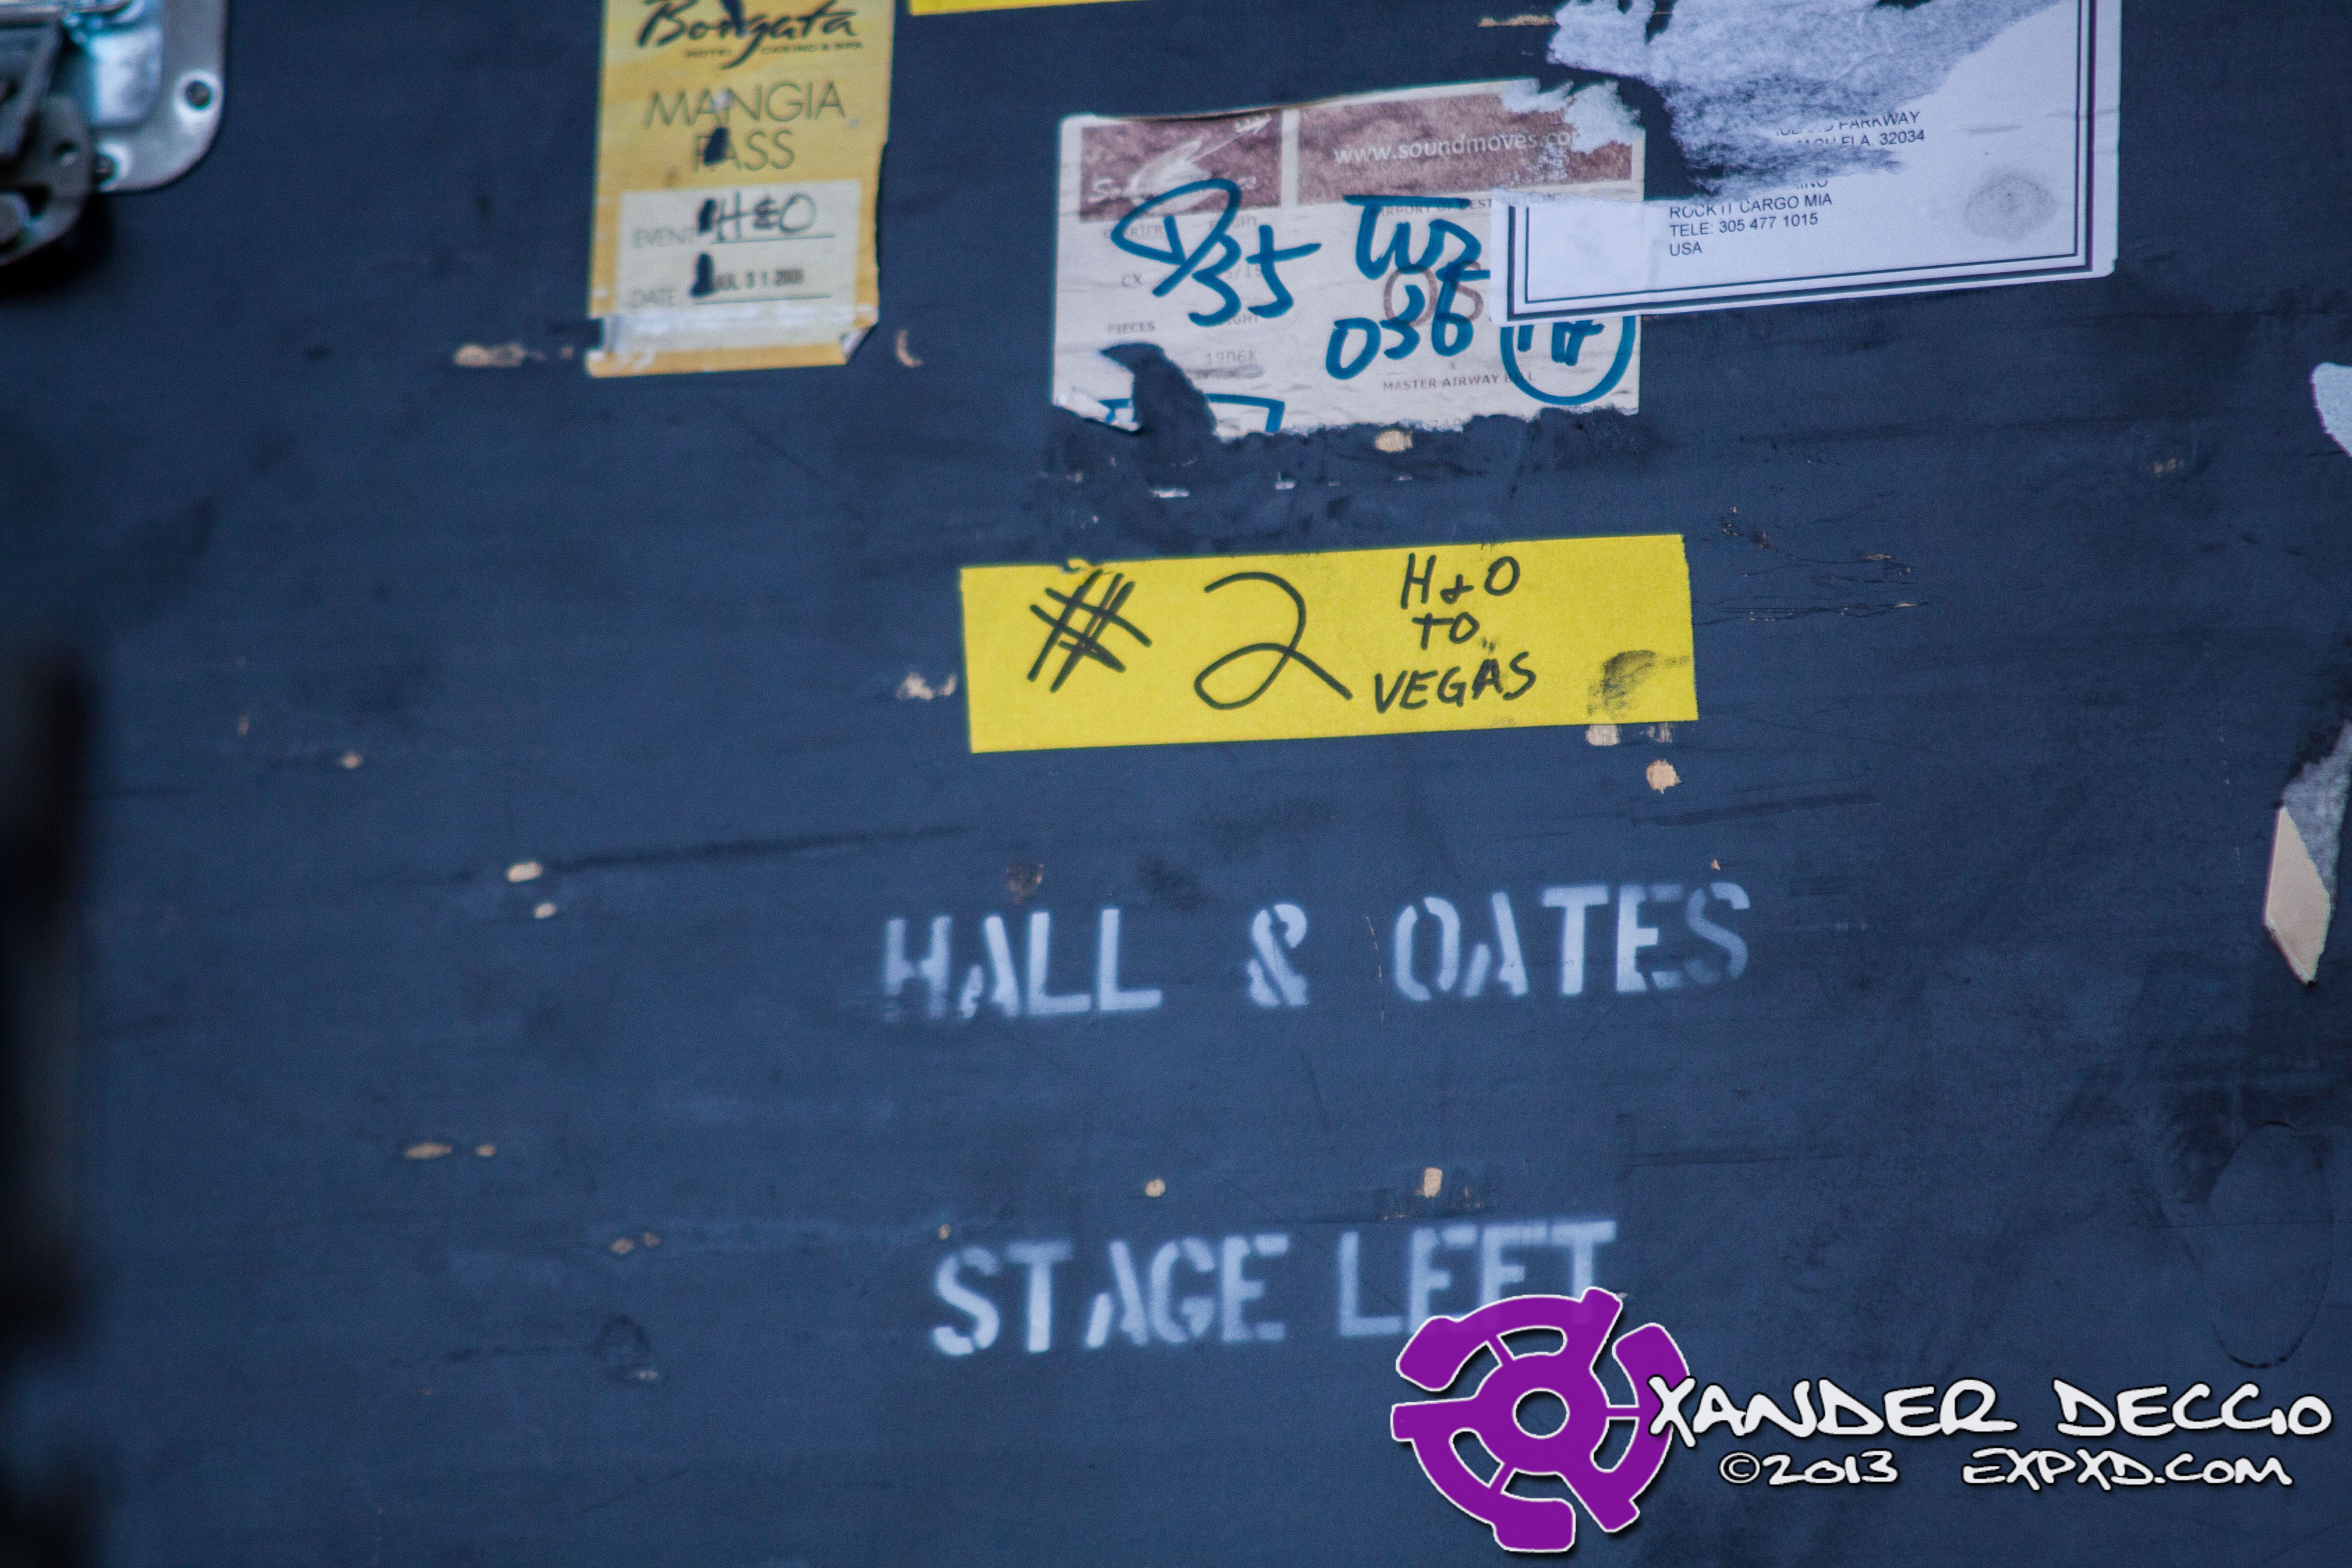 Darryl Hall & John Oates Live @ Maryhill Winery– 8/13/13 (Photo by Xander Deccio)